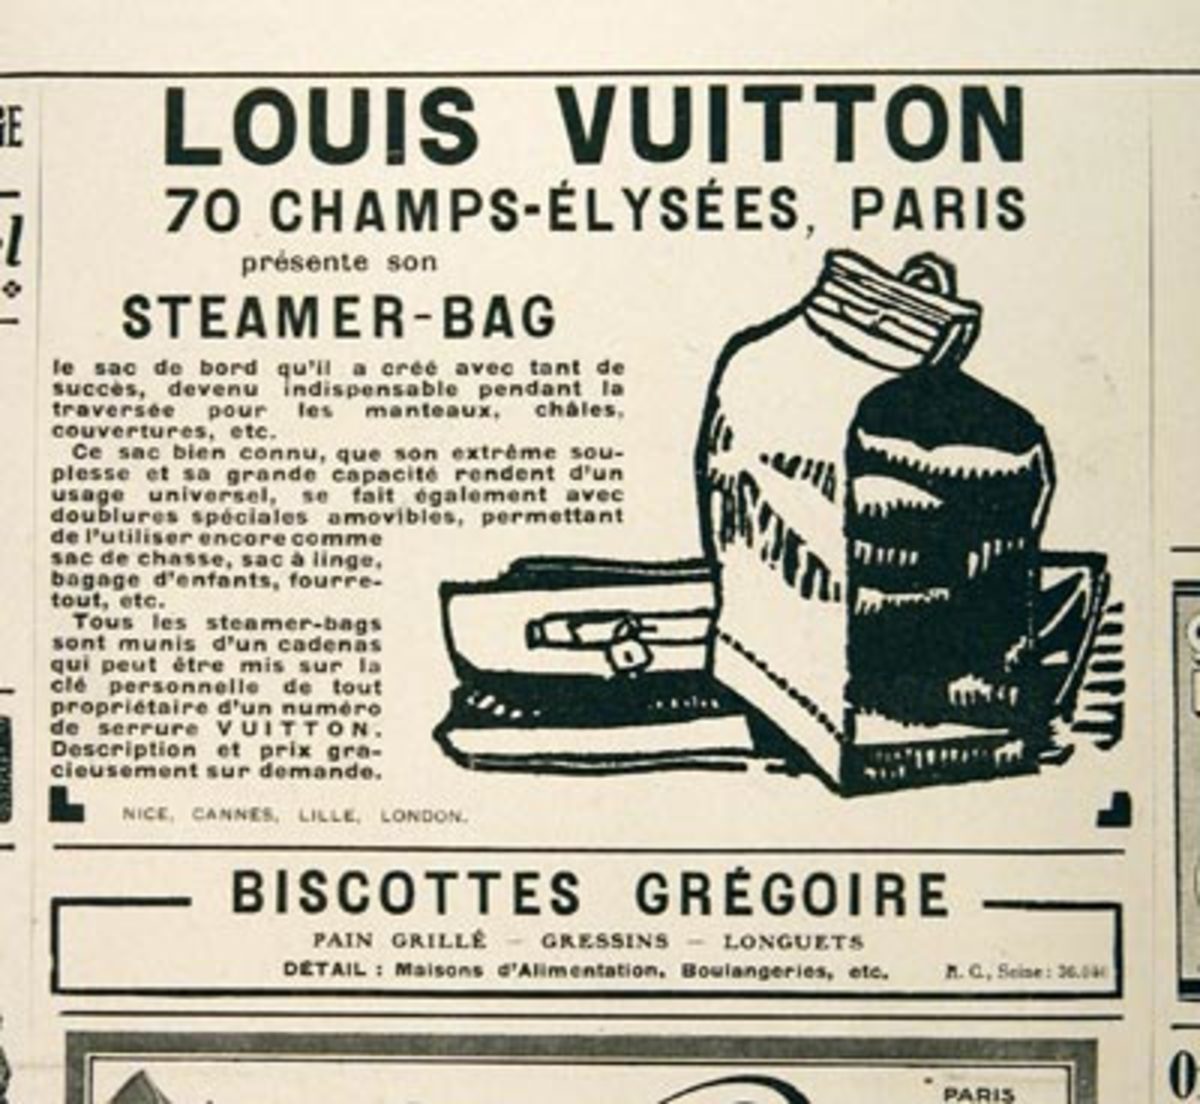 Louis Vuitton Ads Poster G337591 